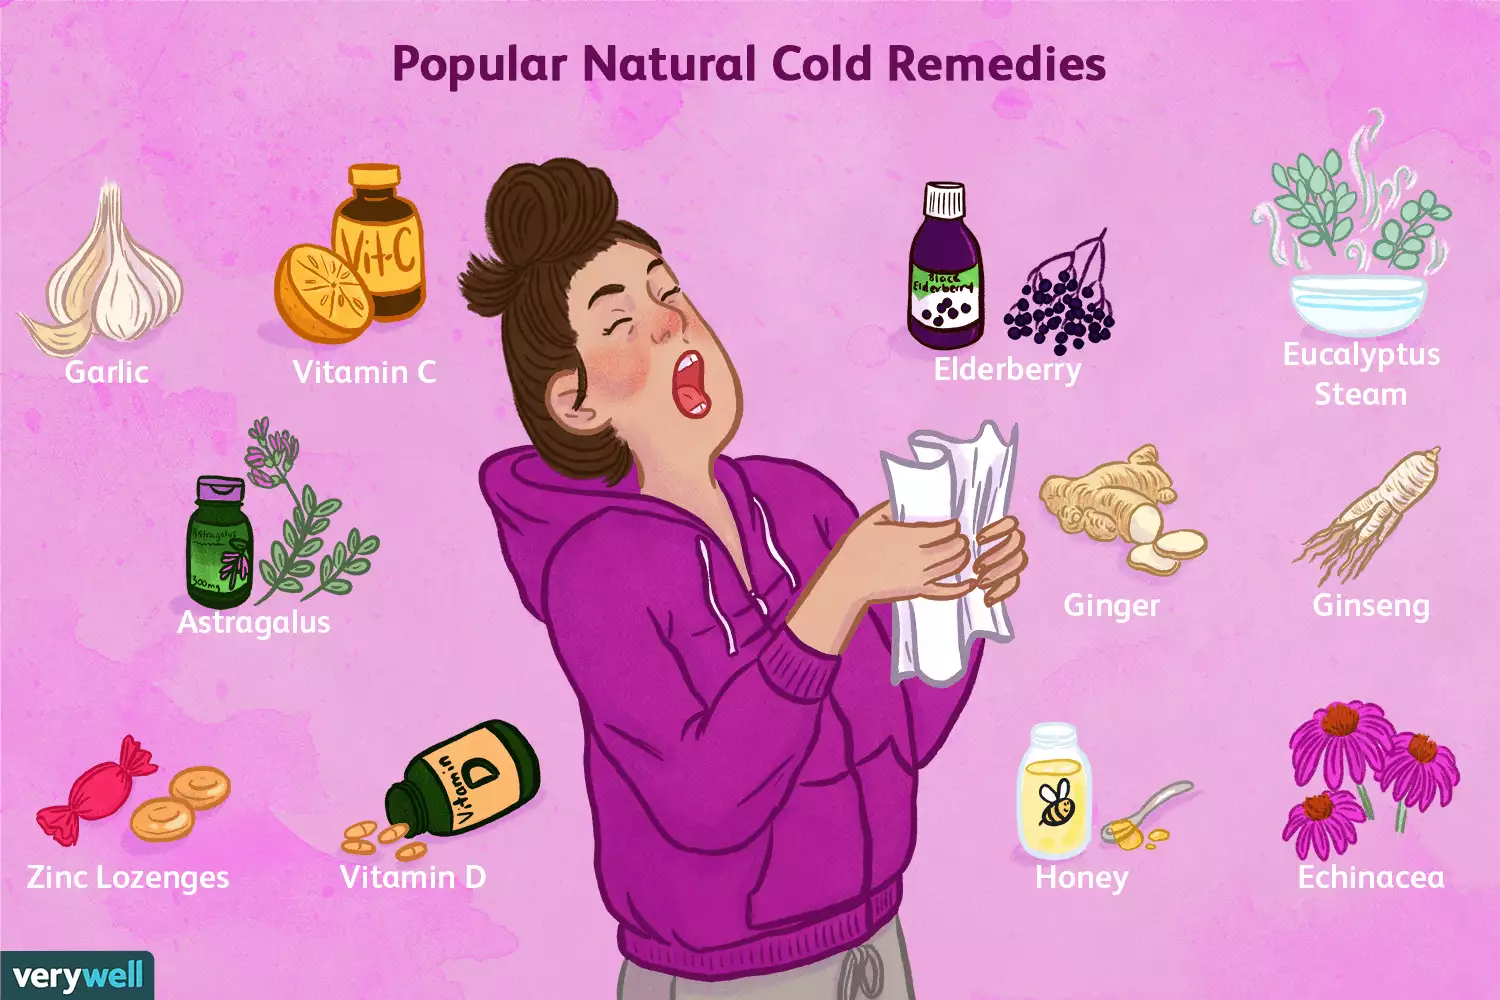 ยาธรรมชาติ 11 ชนิดรักษาโรคไข้หวัด